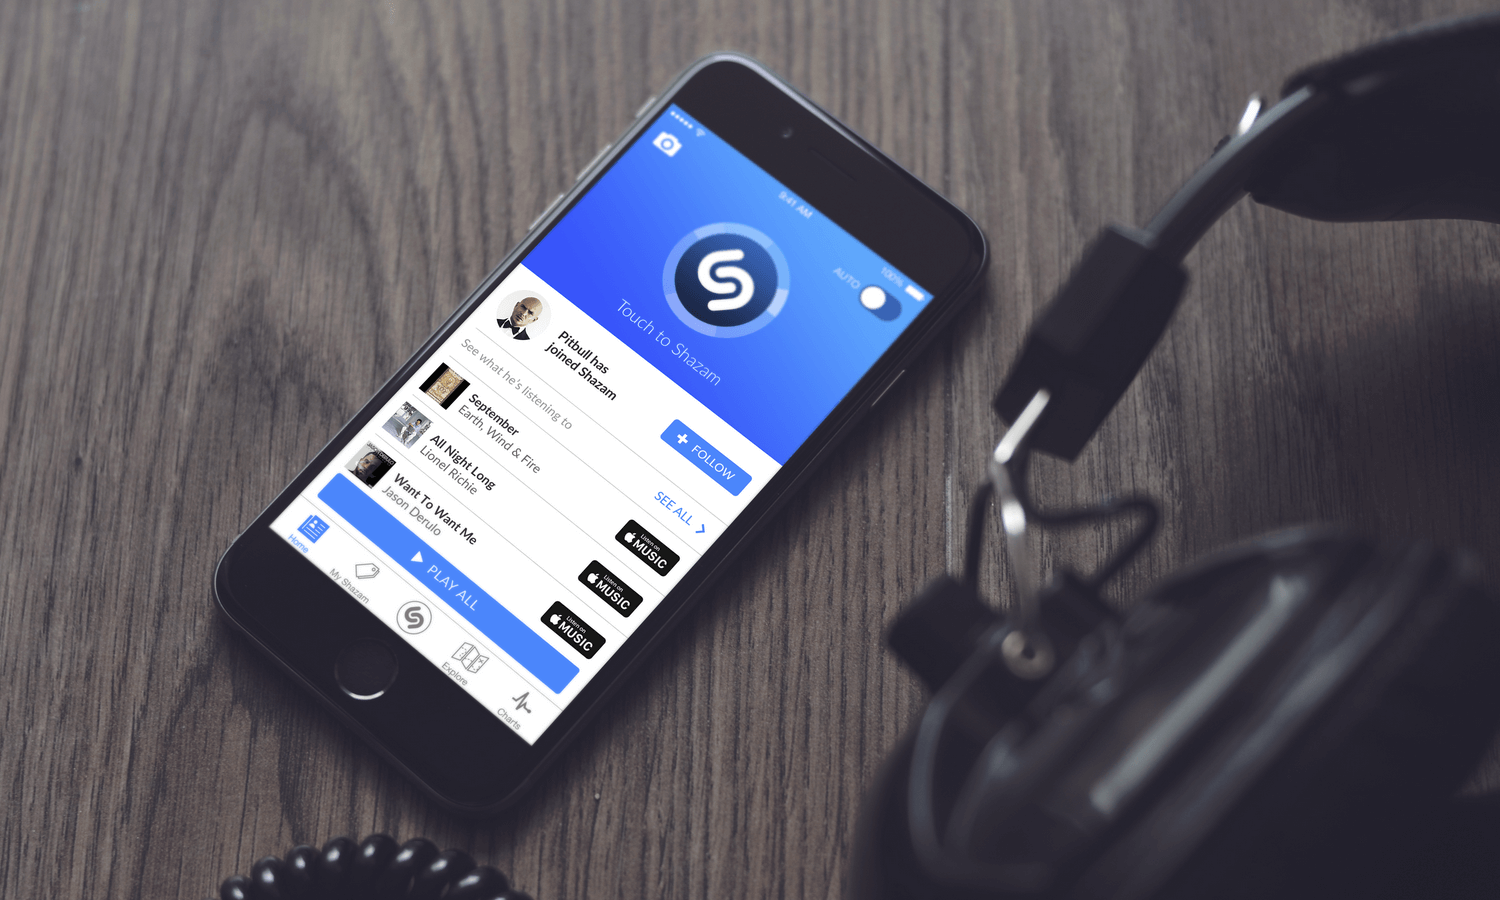 Shazam для iOS получил крупное обновление